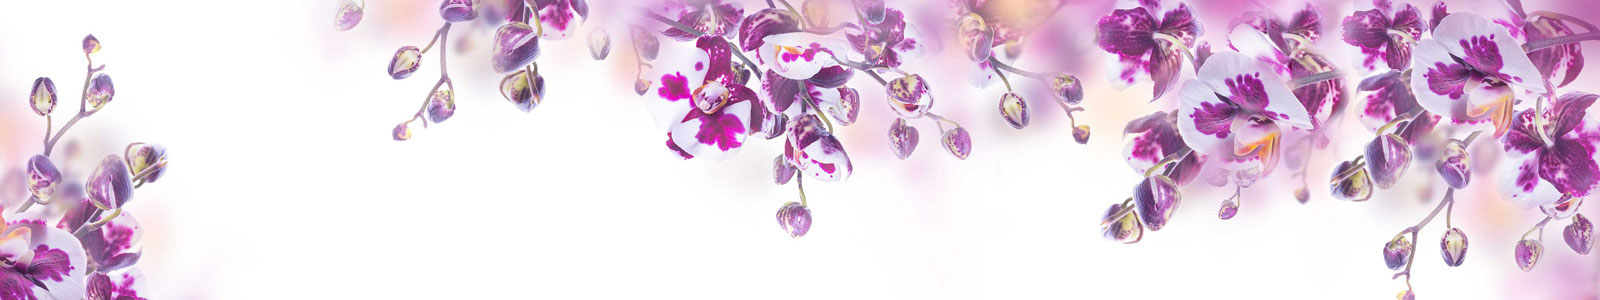 №5103 - Нежные пурпурные орхидеи на белом фоне